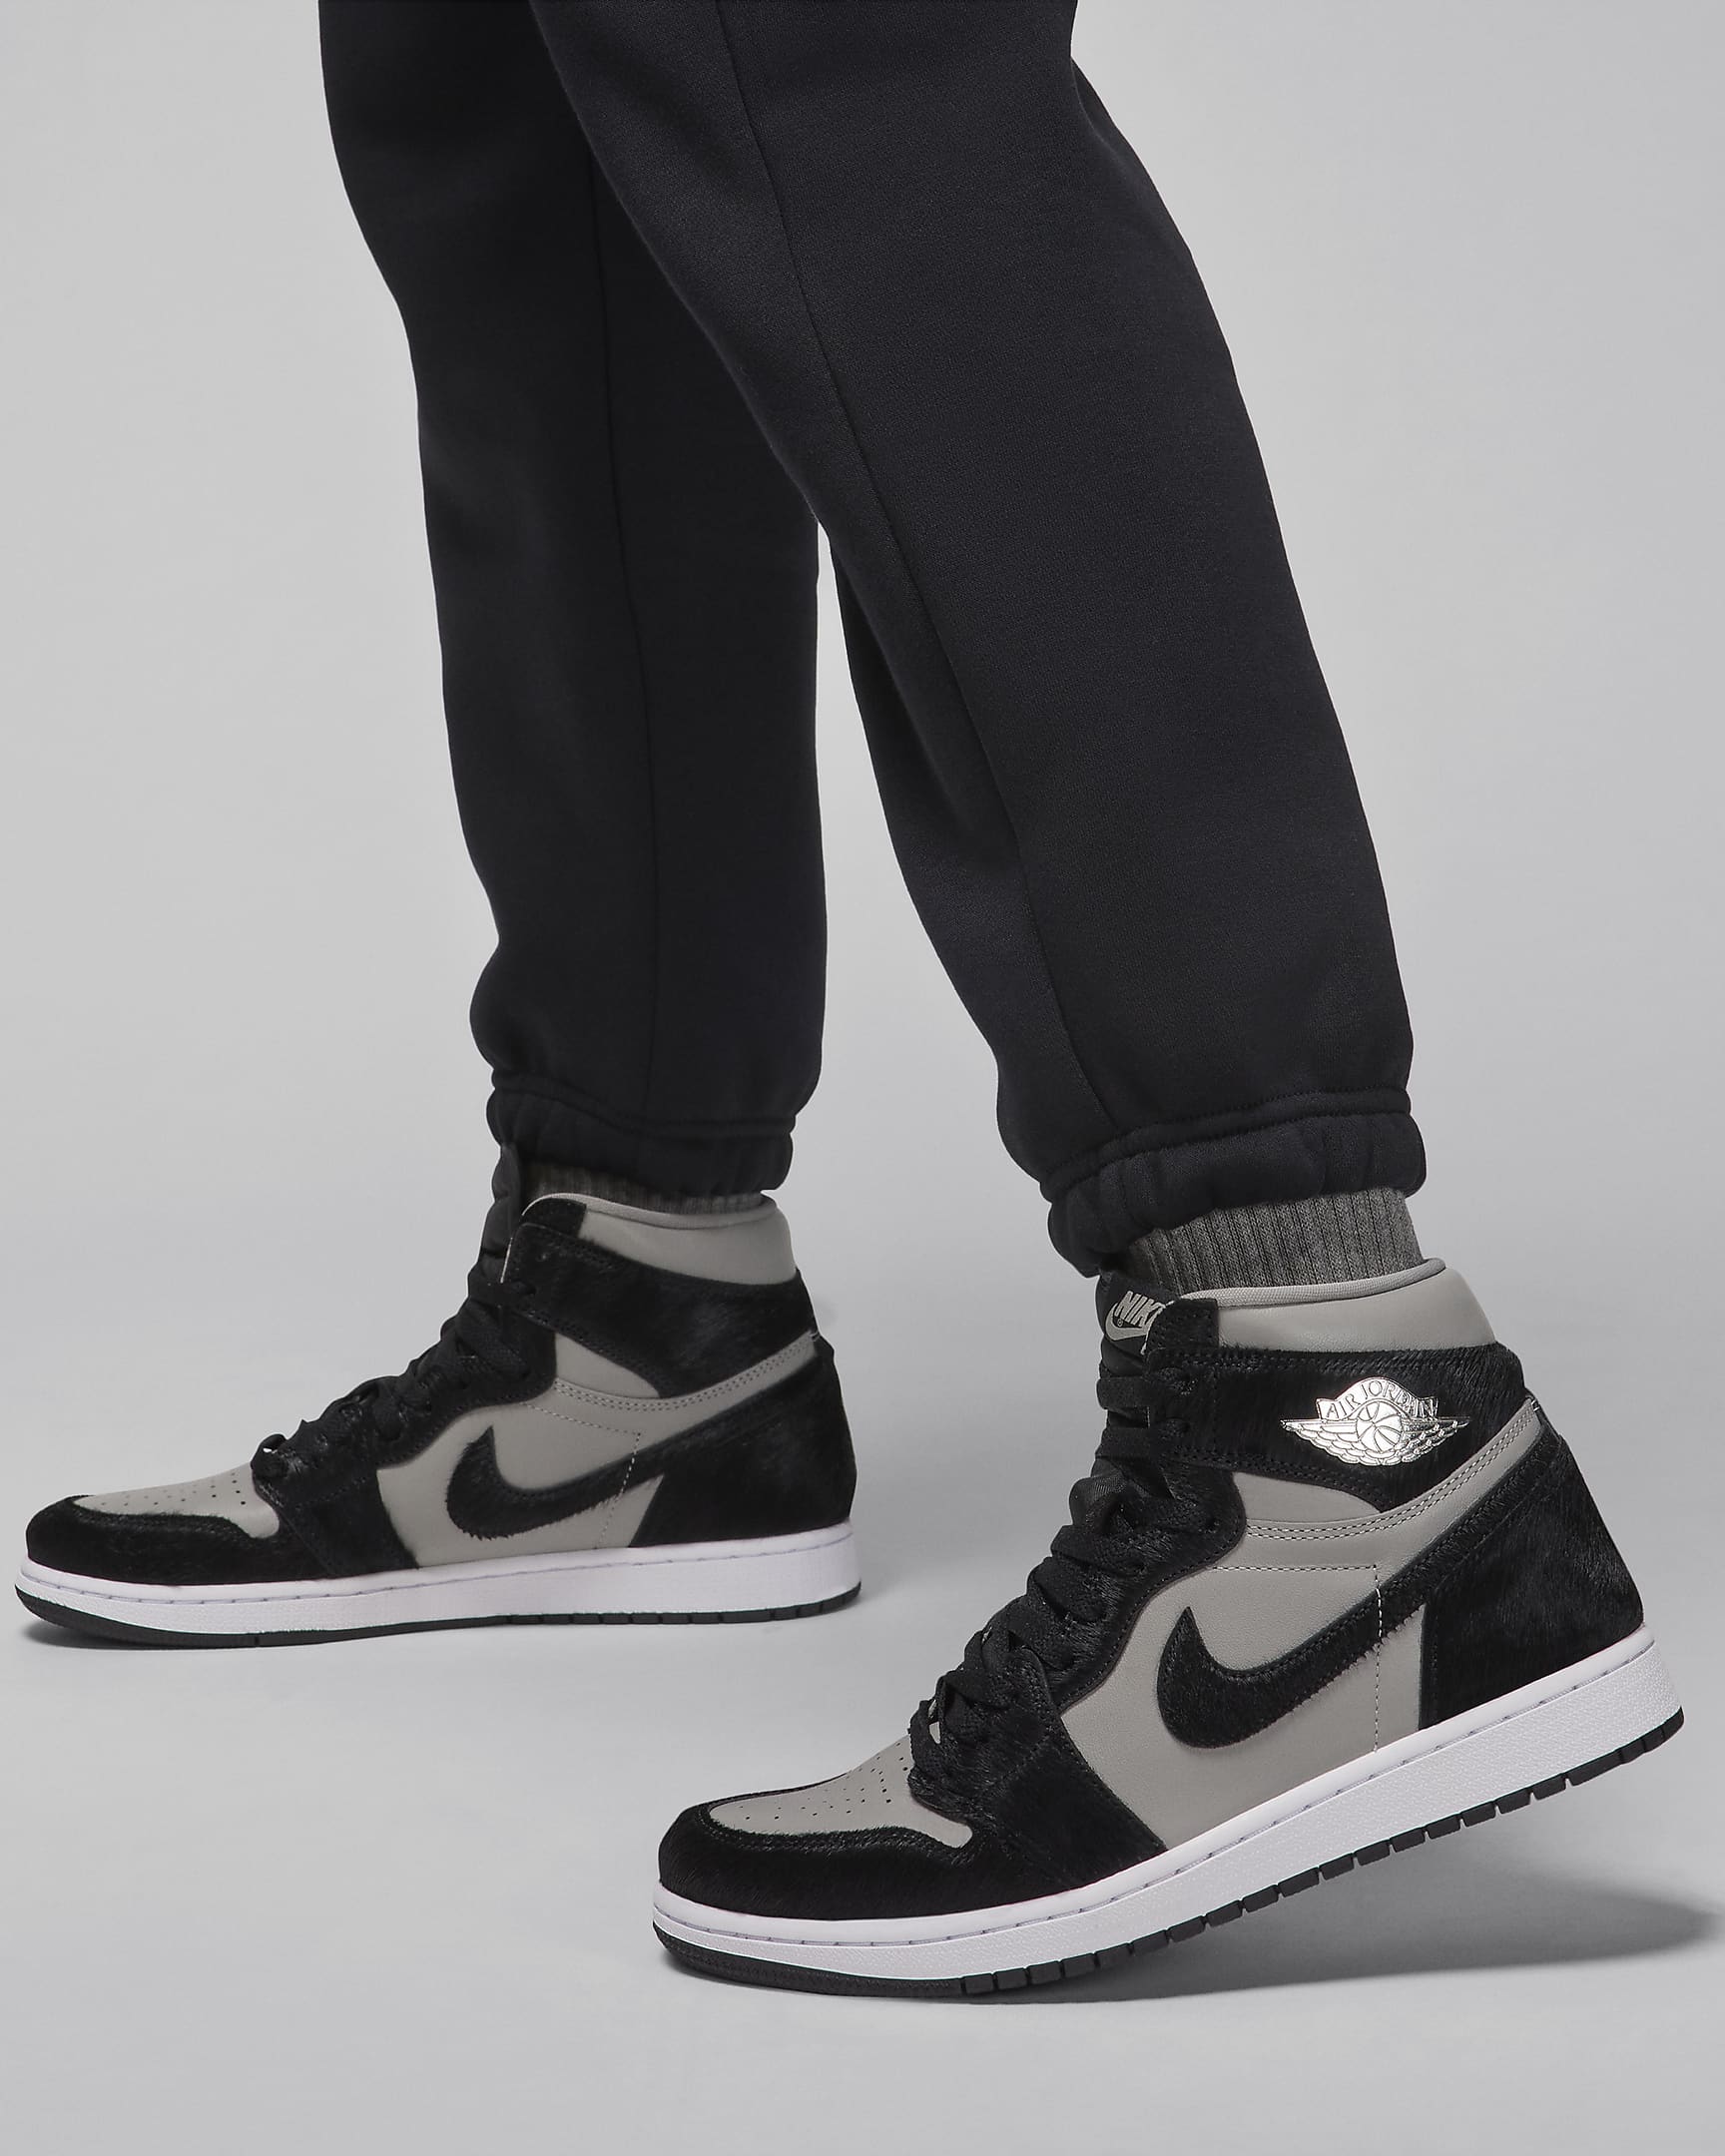 Jordan Brooklyn Fleece Women's Trousers. Nike CA